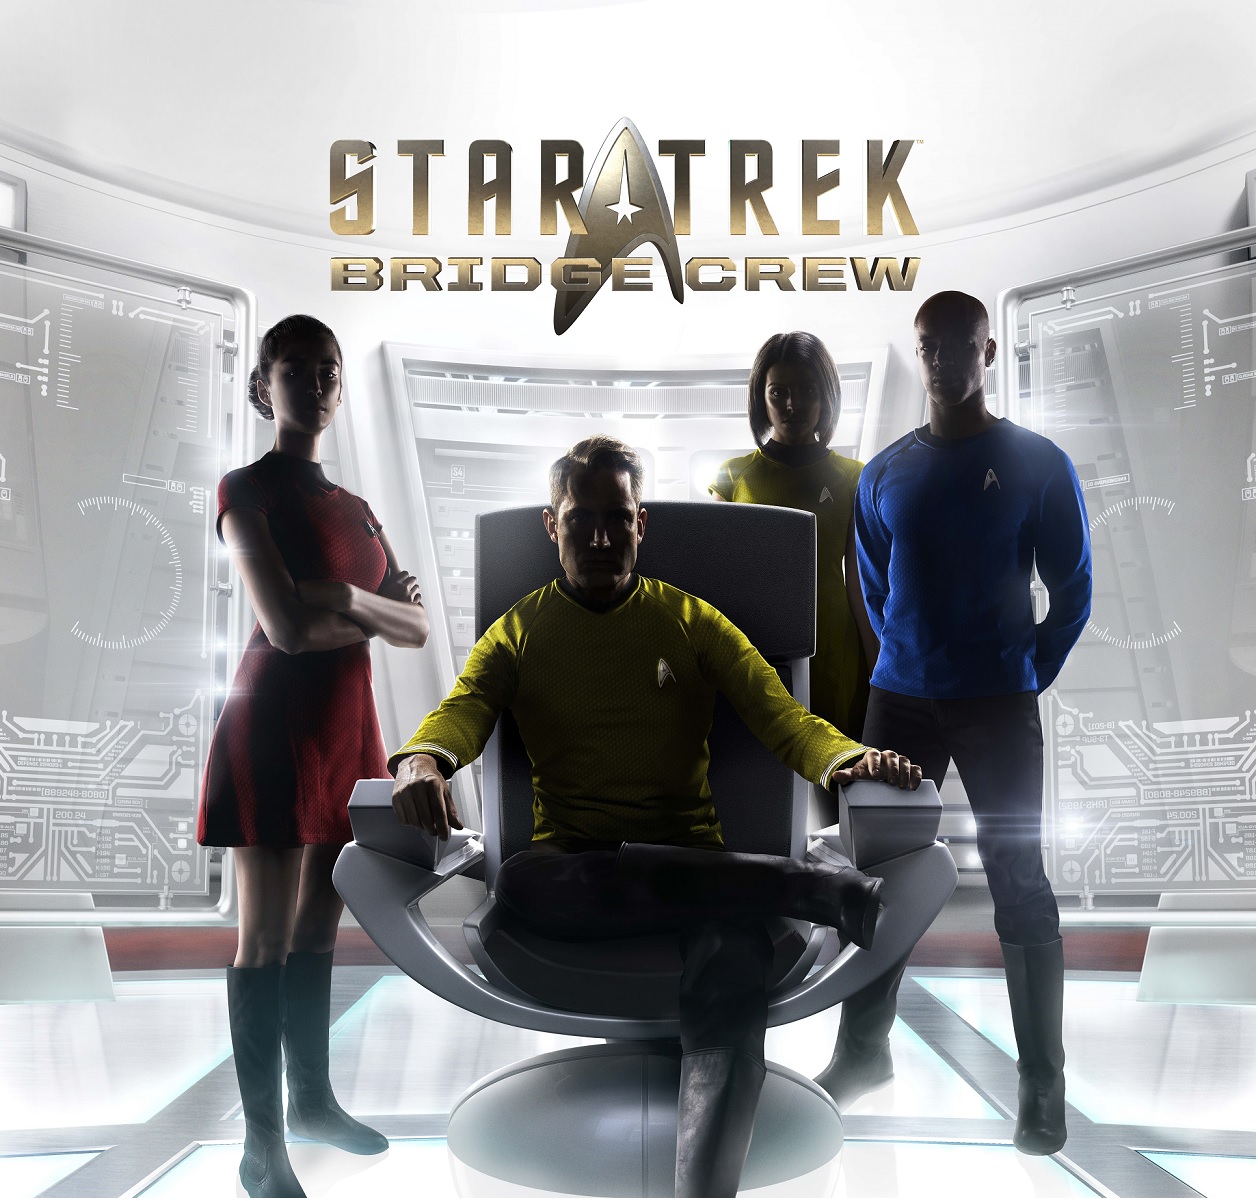 Stra Trek: Bridge Crew ya es compatible para jugar en PS4 sin necesidad de PS VR